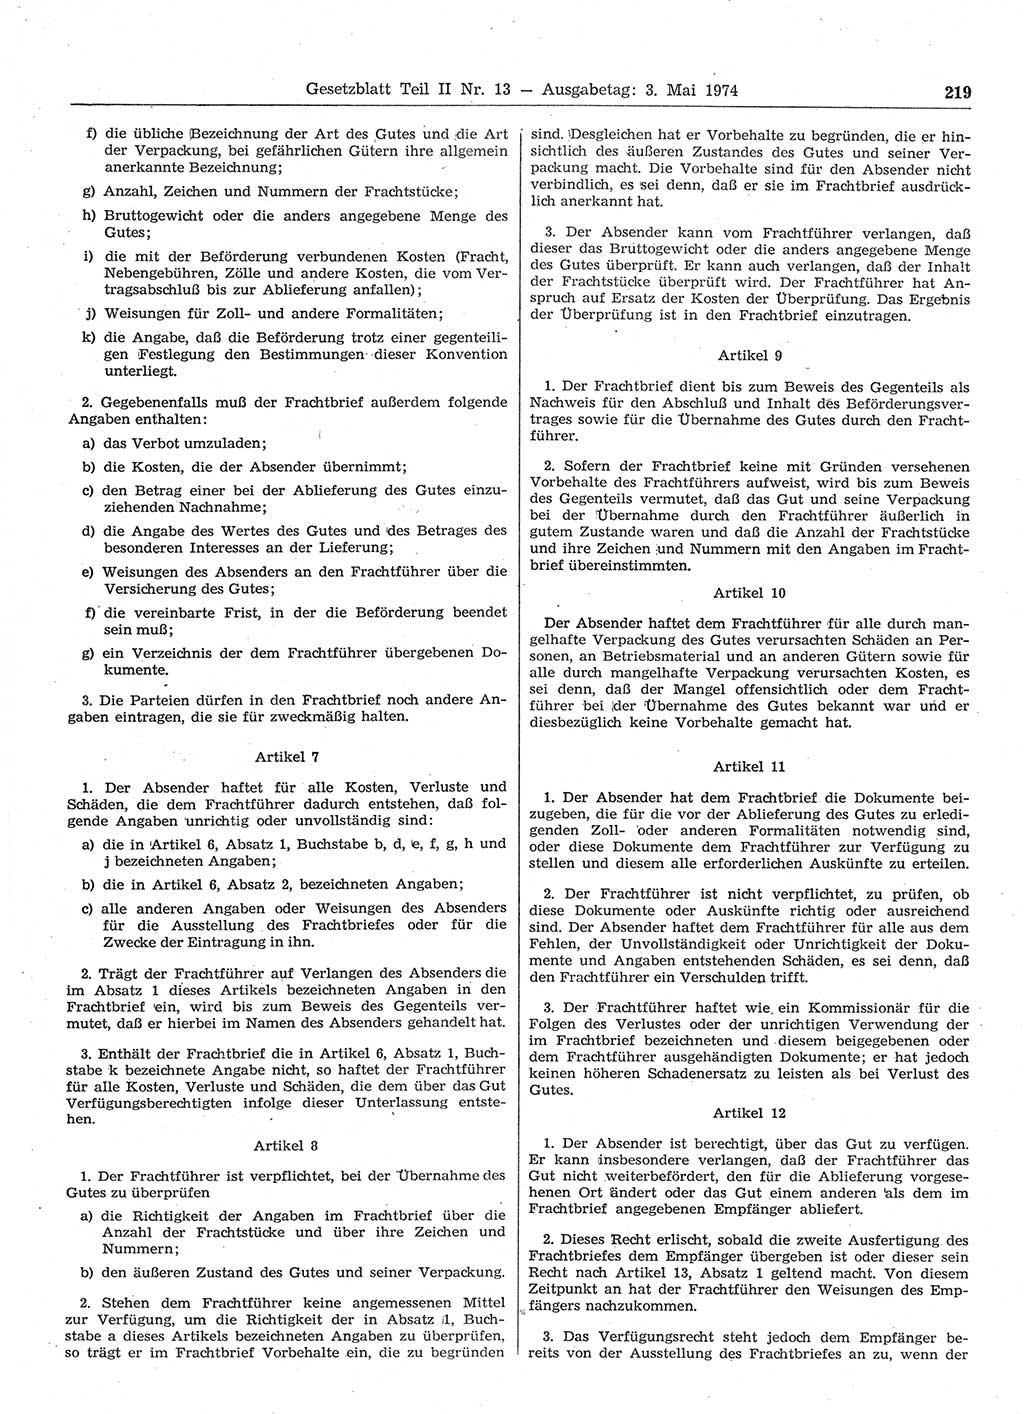 Gesetzblatt (GBl.) der Deutschen Demokratischen Republik (DDR) Teil ⅠⅠ 1974, Seite 219 (GBl. DDR ⅠⅠ 1974, S. 219)